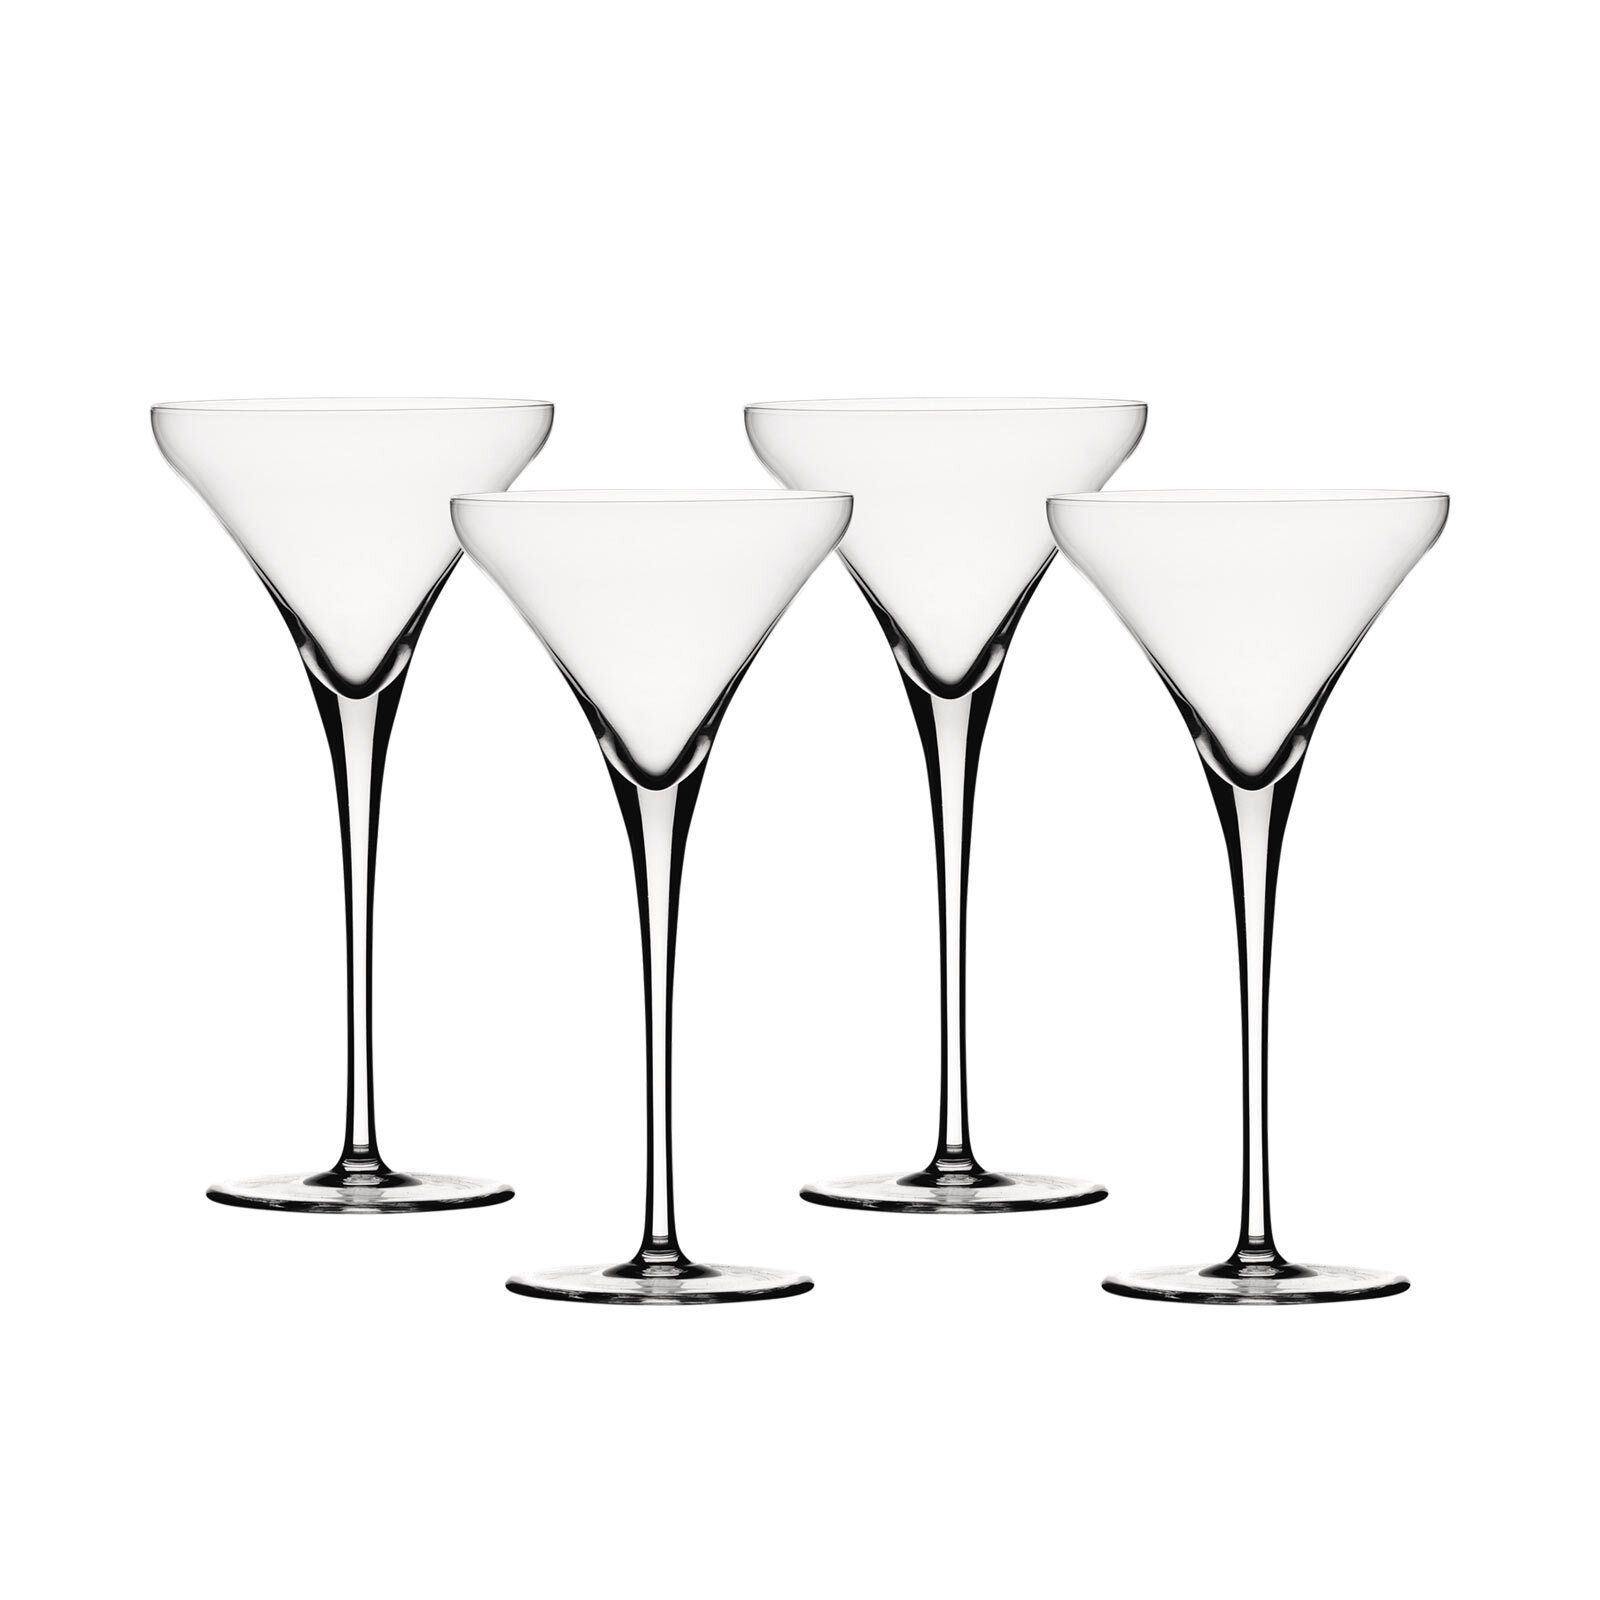 SPIEGELAU Gläser-Set Willsberger Anniversary Cocktail 4er Set, Kristallglas